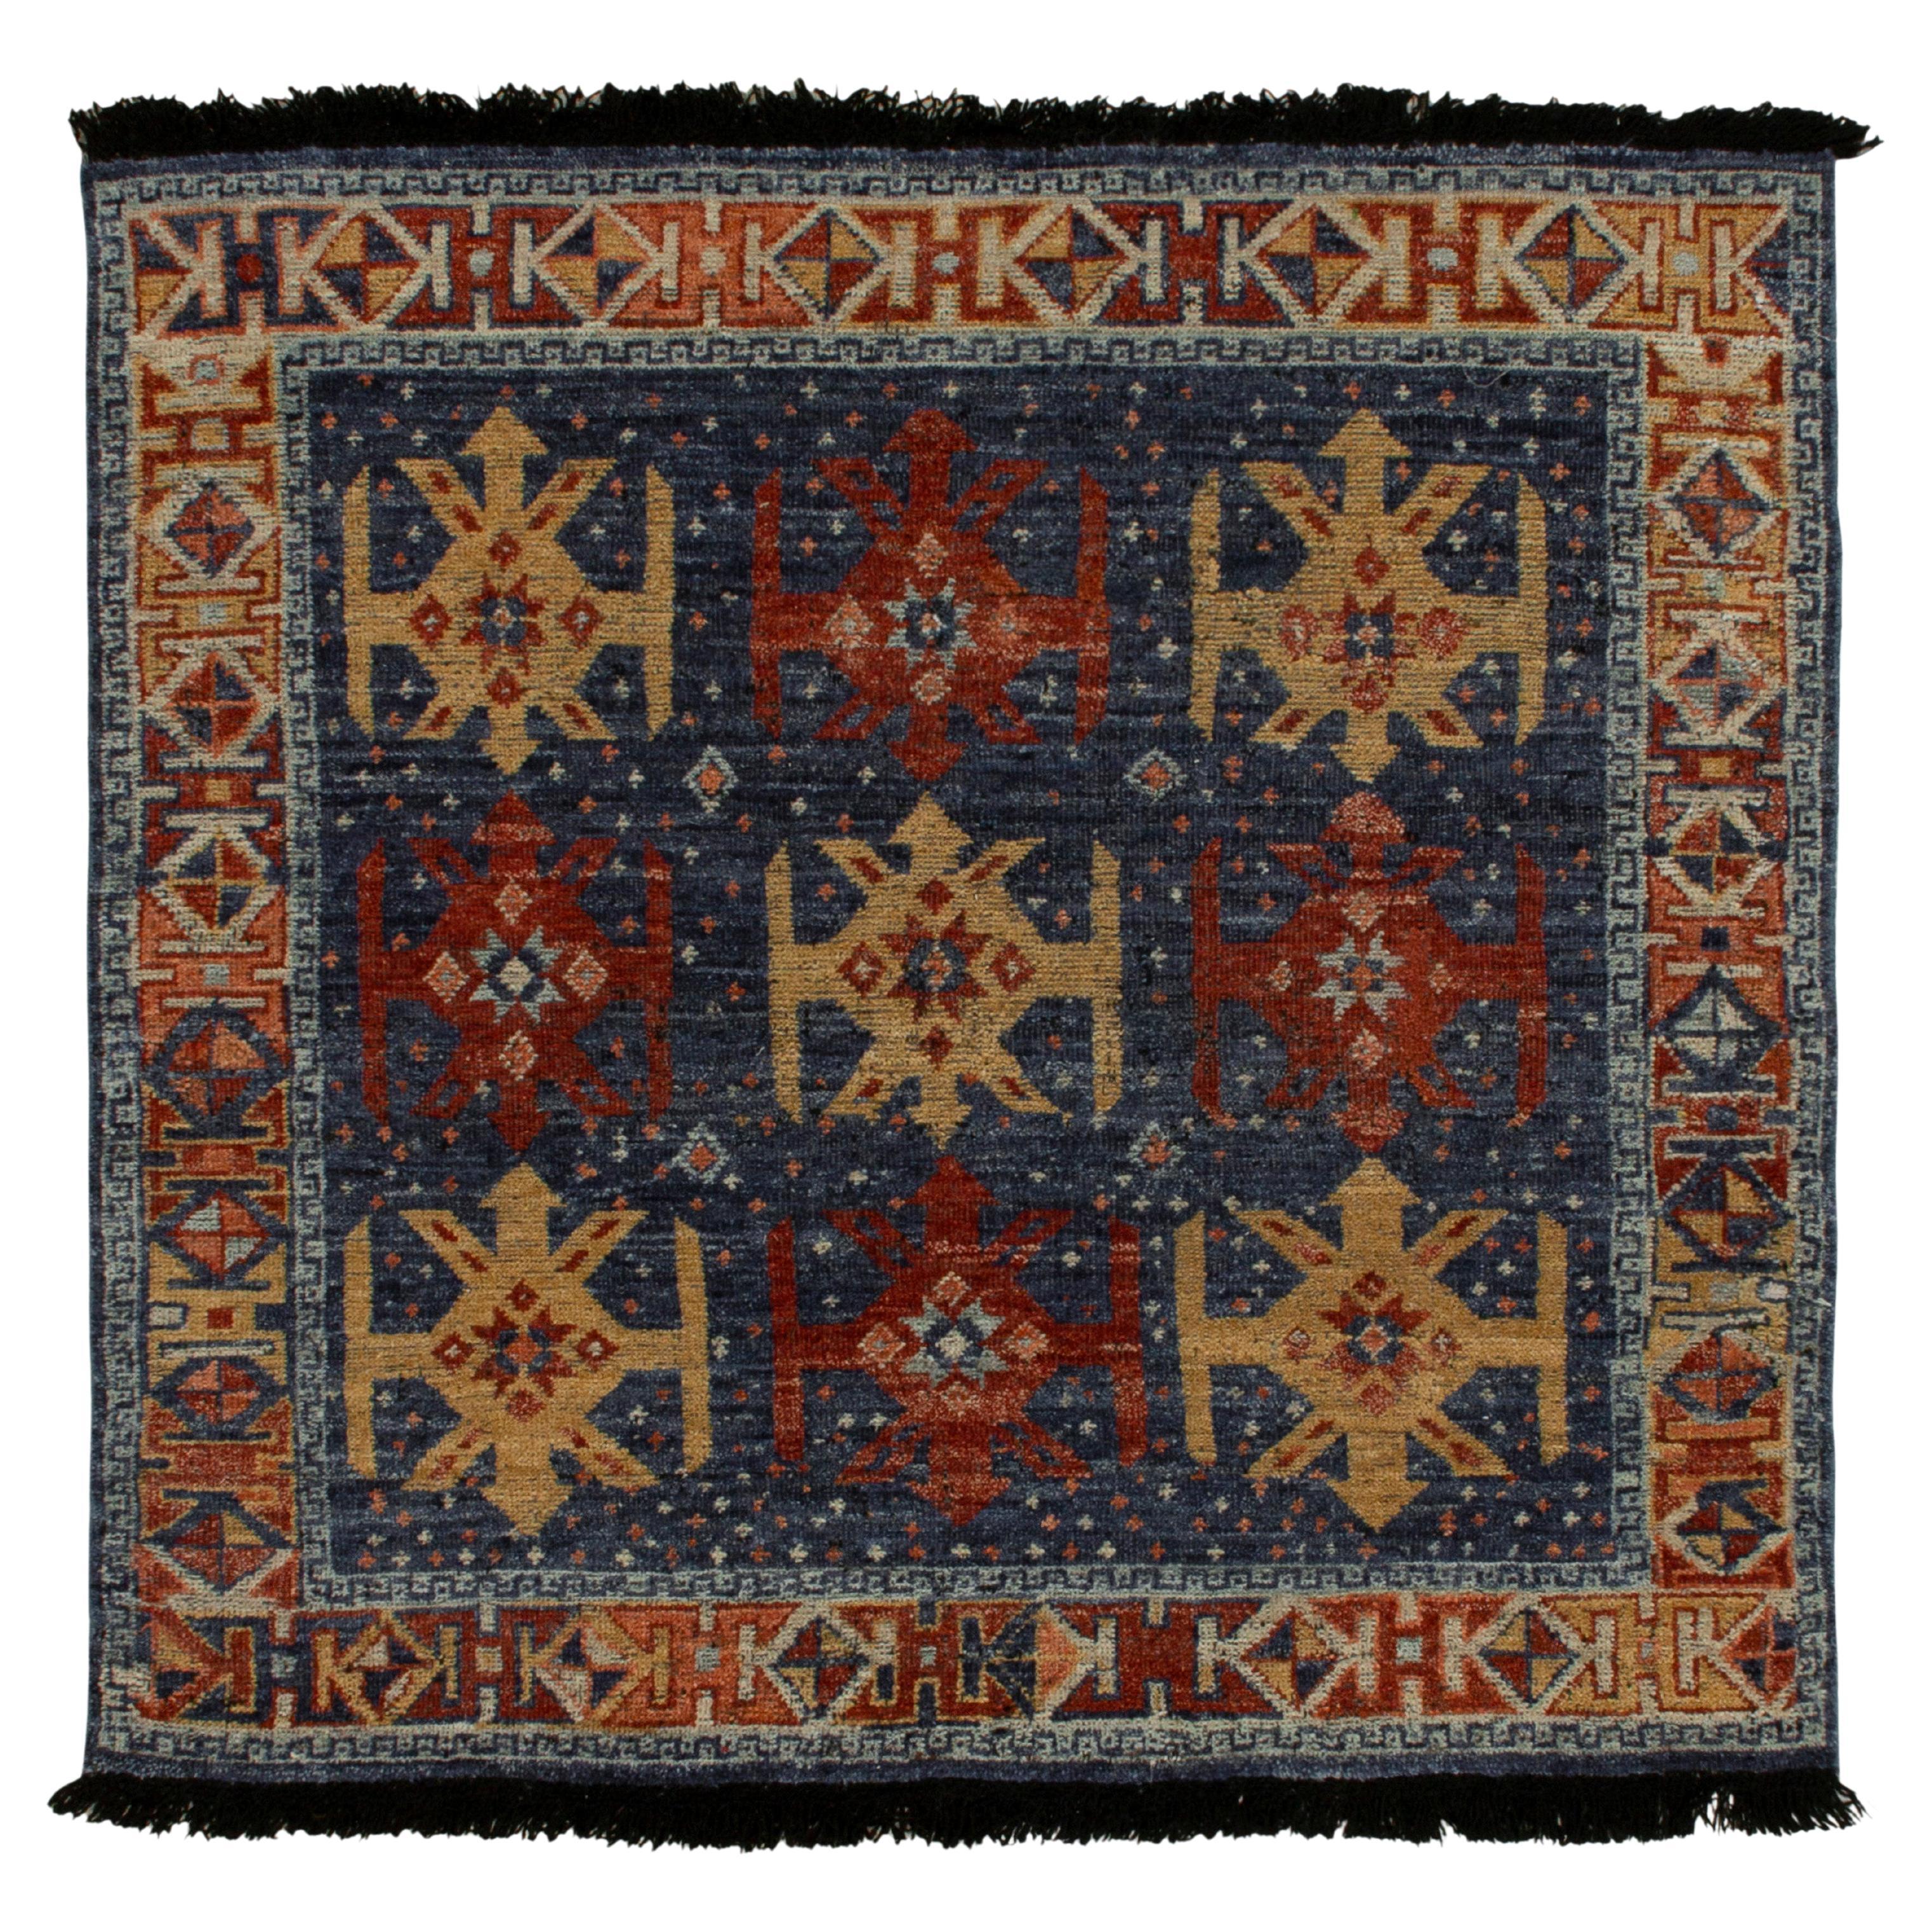 Quadratischer Teppich im Stammes- und Kelim-Stil in Blau, Rot, Ocker-Medaillons